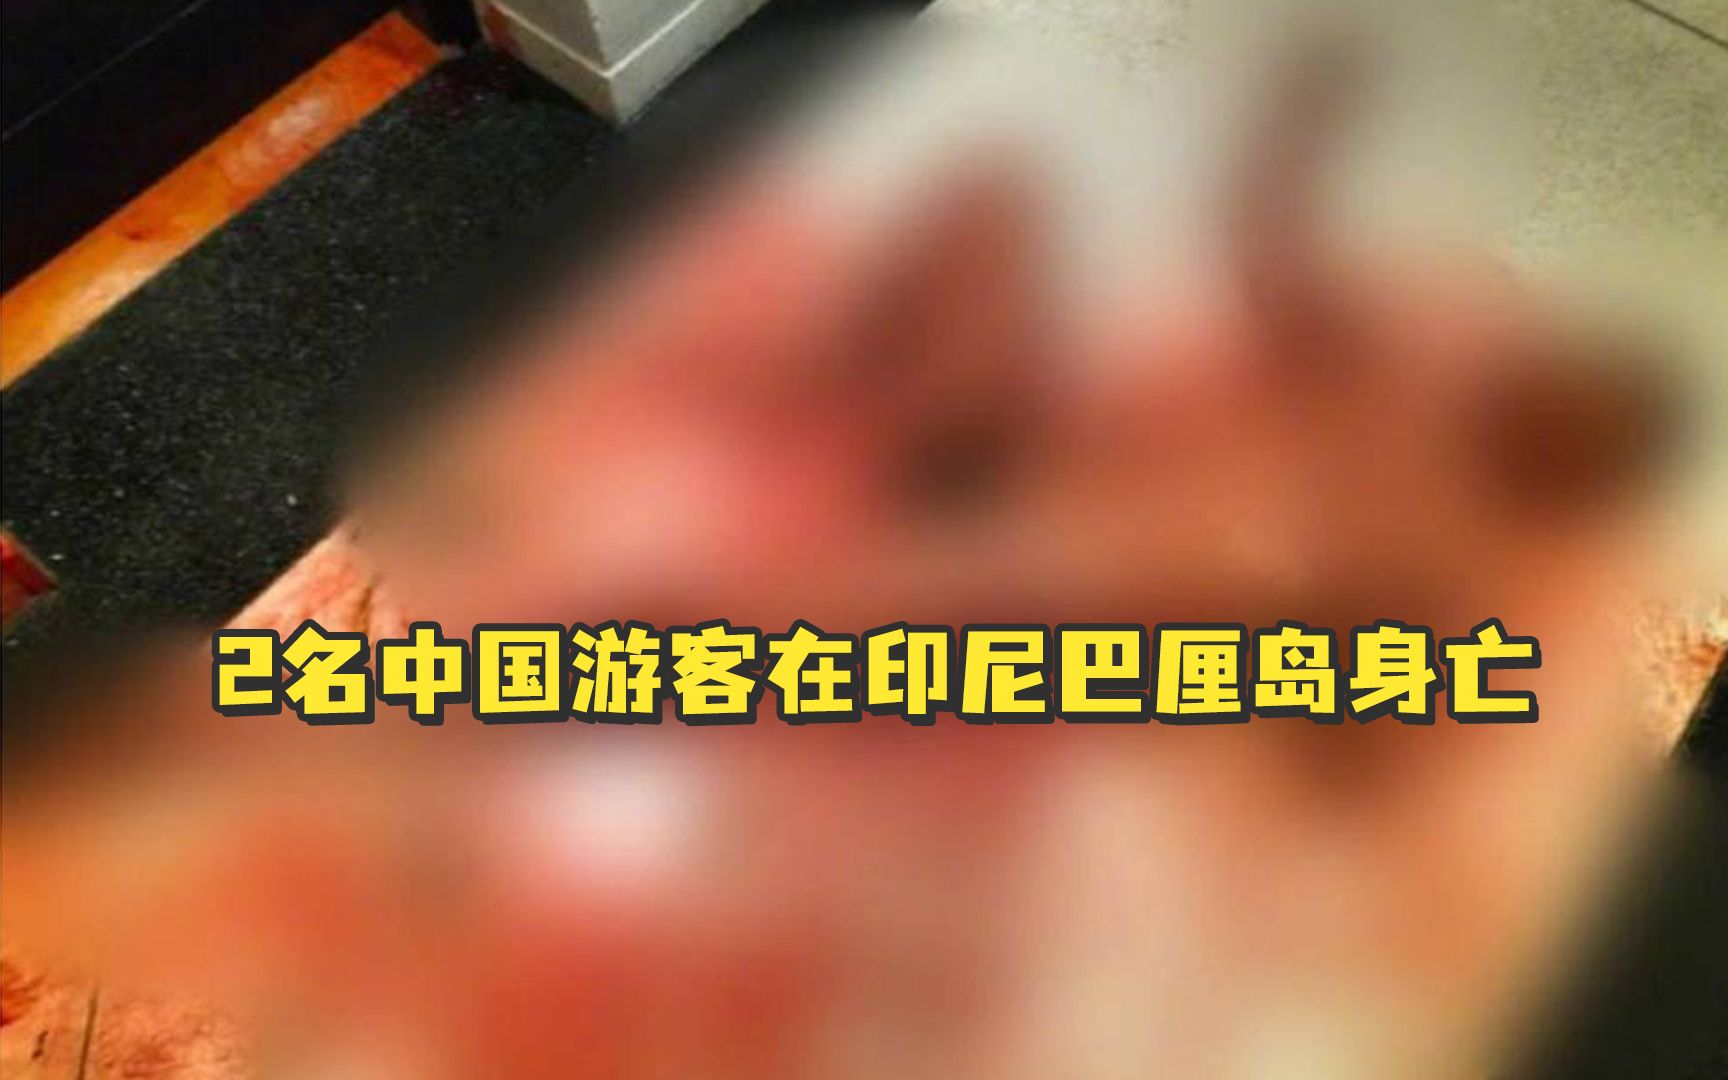 2名中国游客在印尼巴厘岛身亡：系20多岁男女，均全身赤裸且有伤